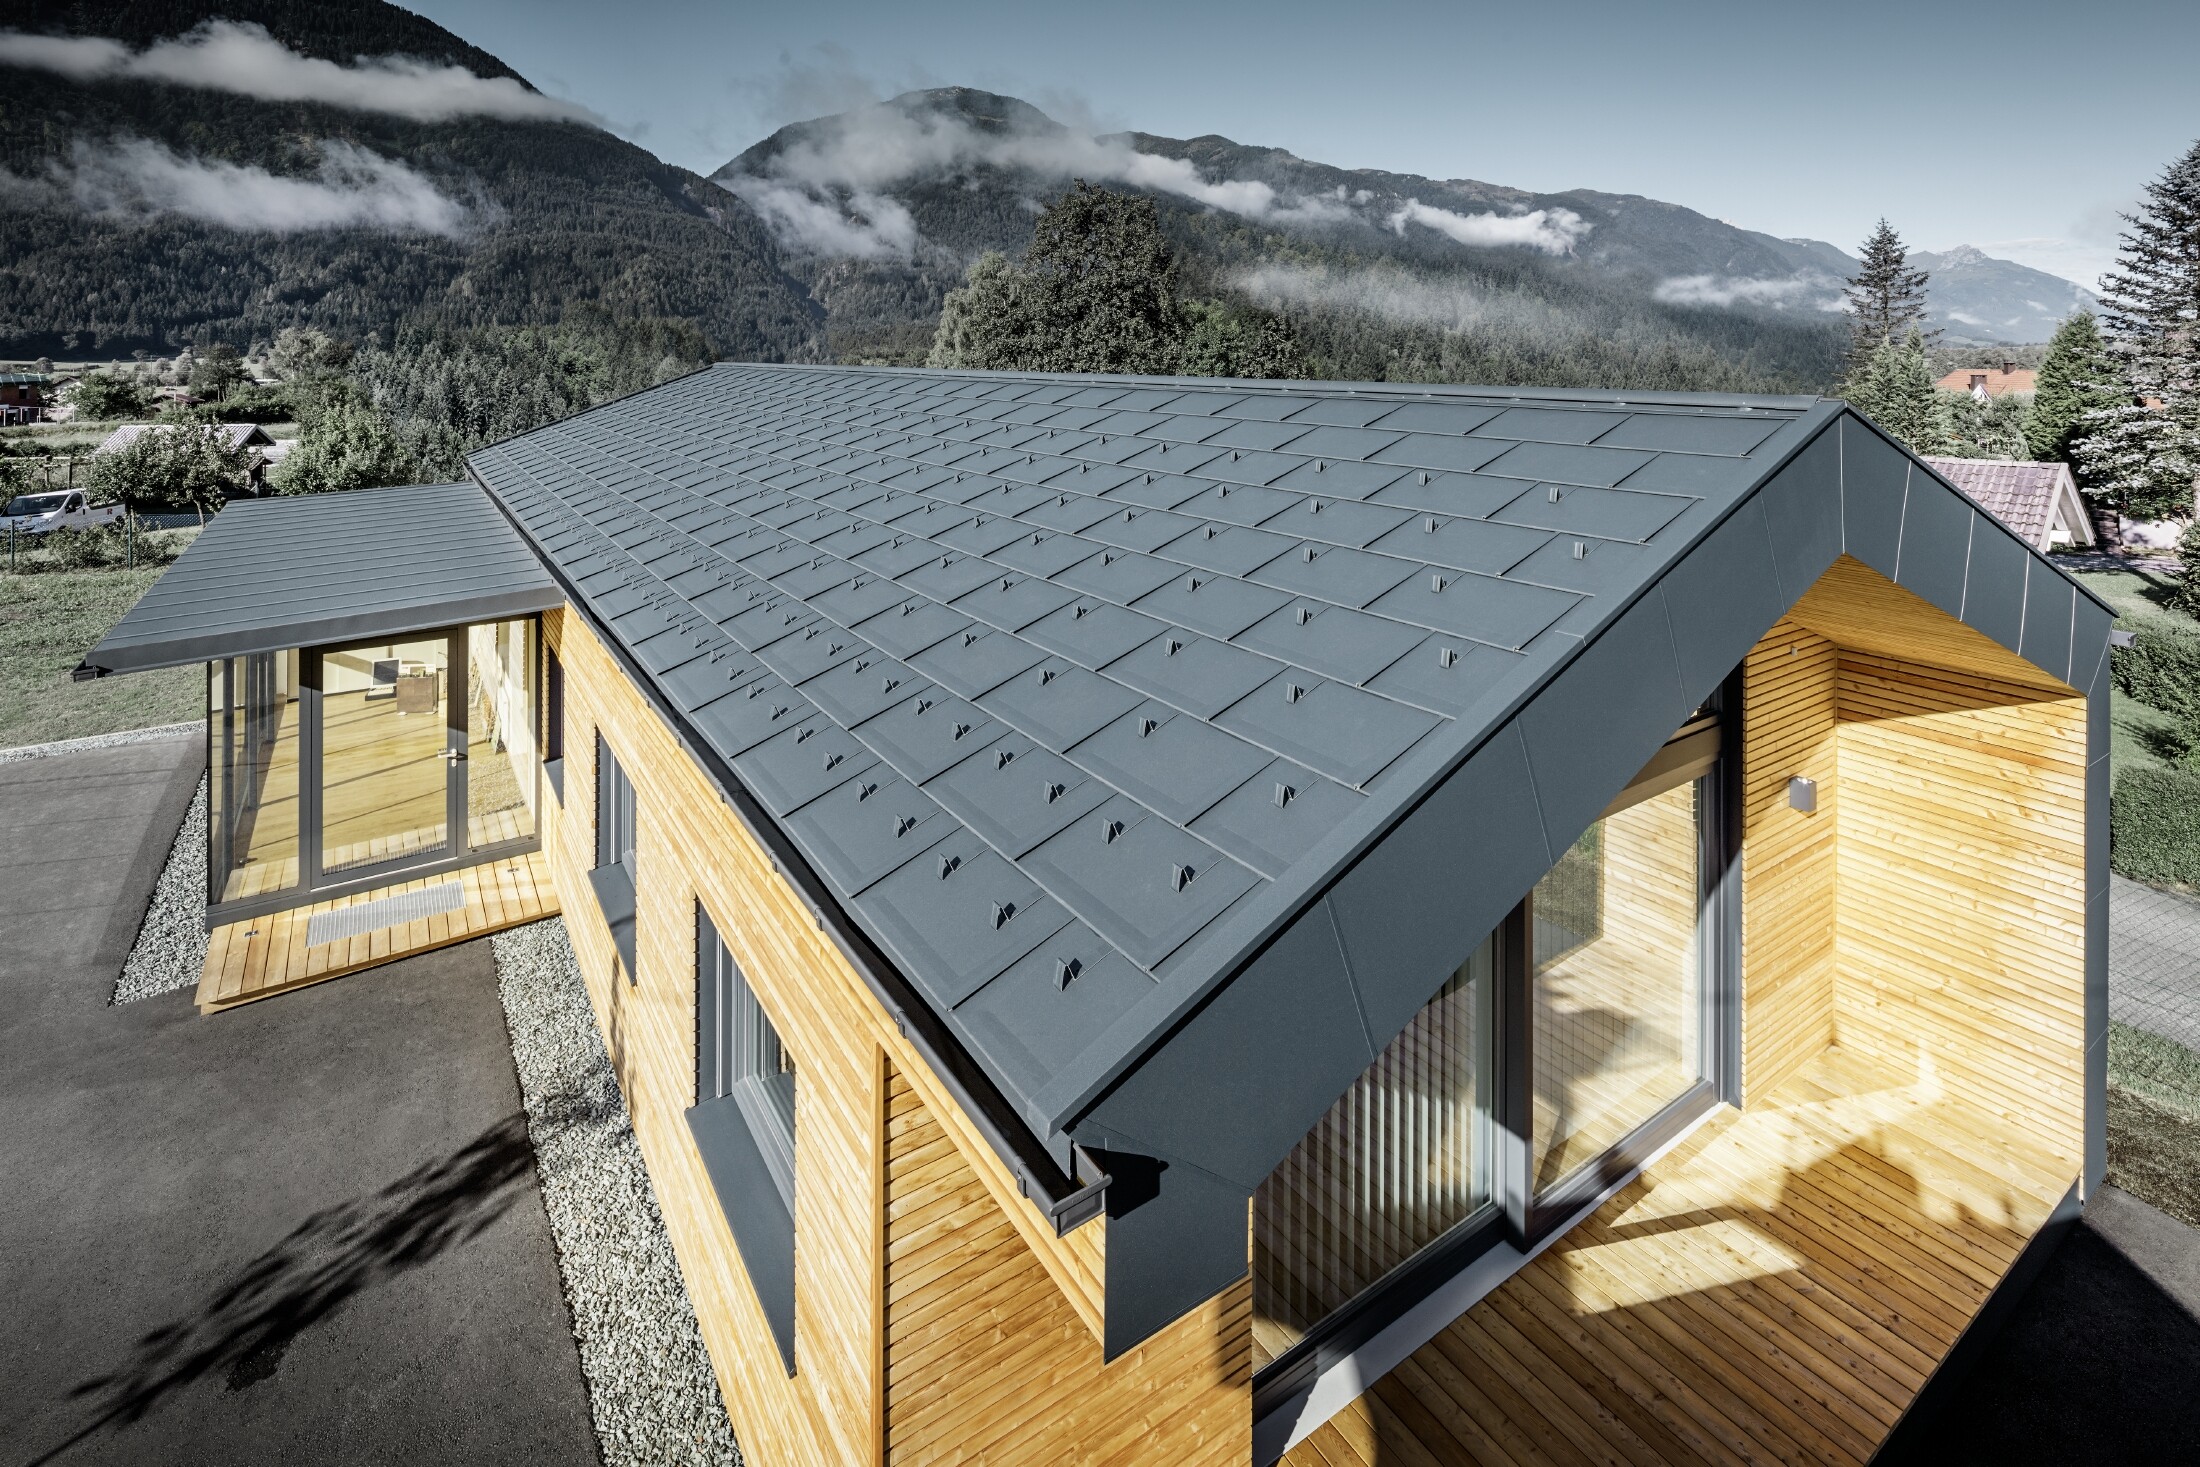 Nieuw kantoorgebouw van Holzbau Faltheiner met gevel van larikshout, royale raampartijen en een PREFA dak in antraciet.